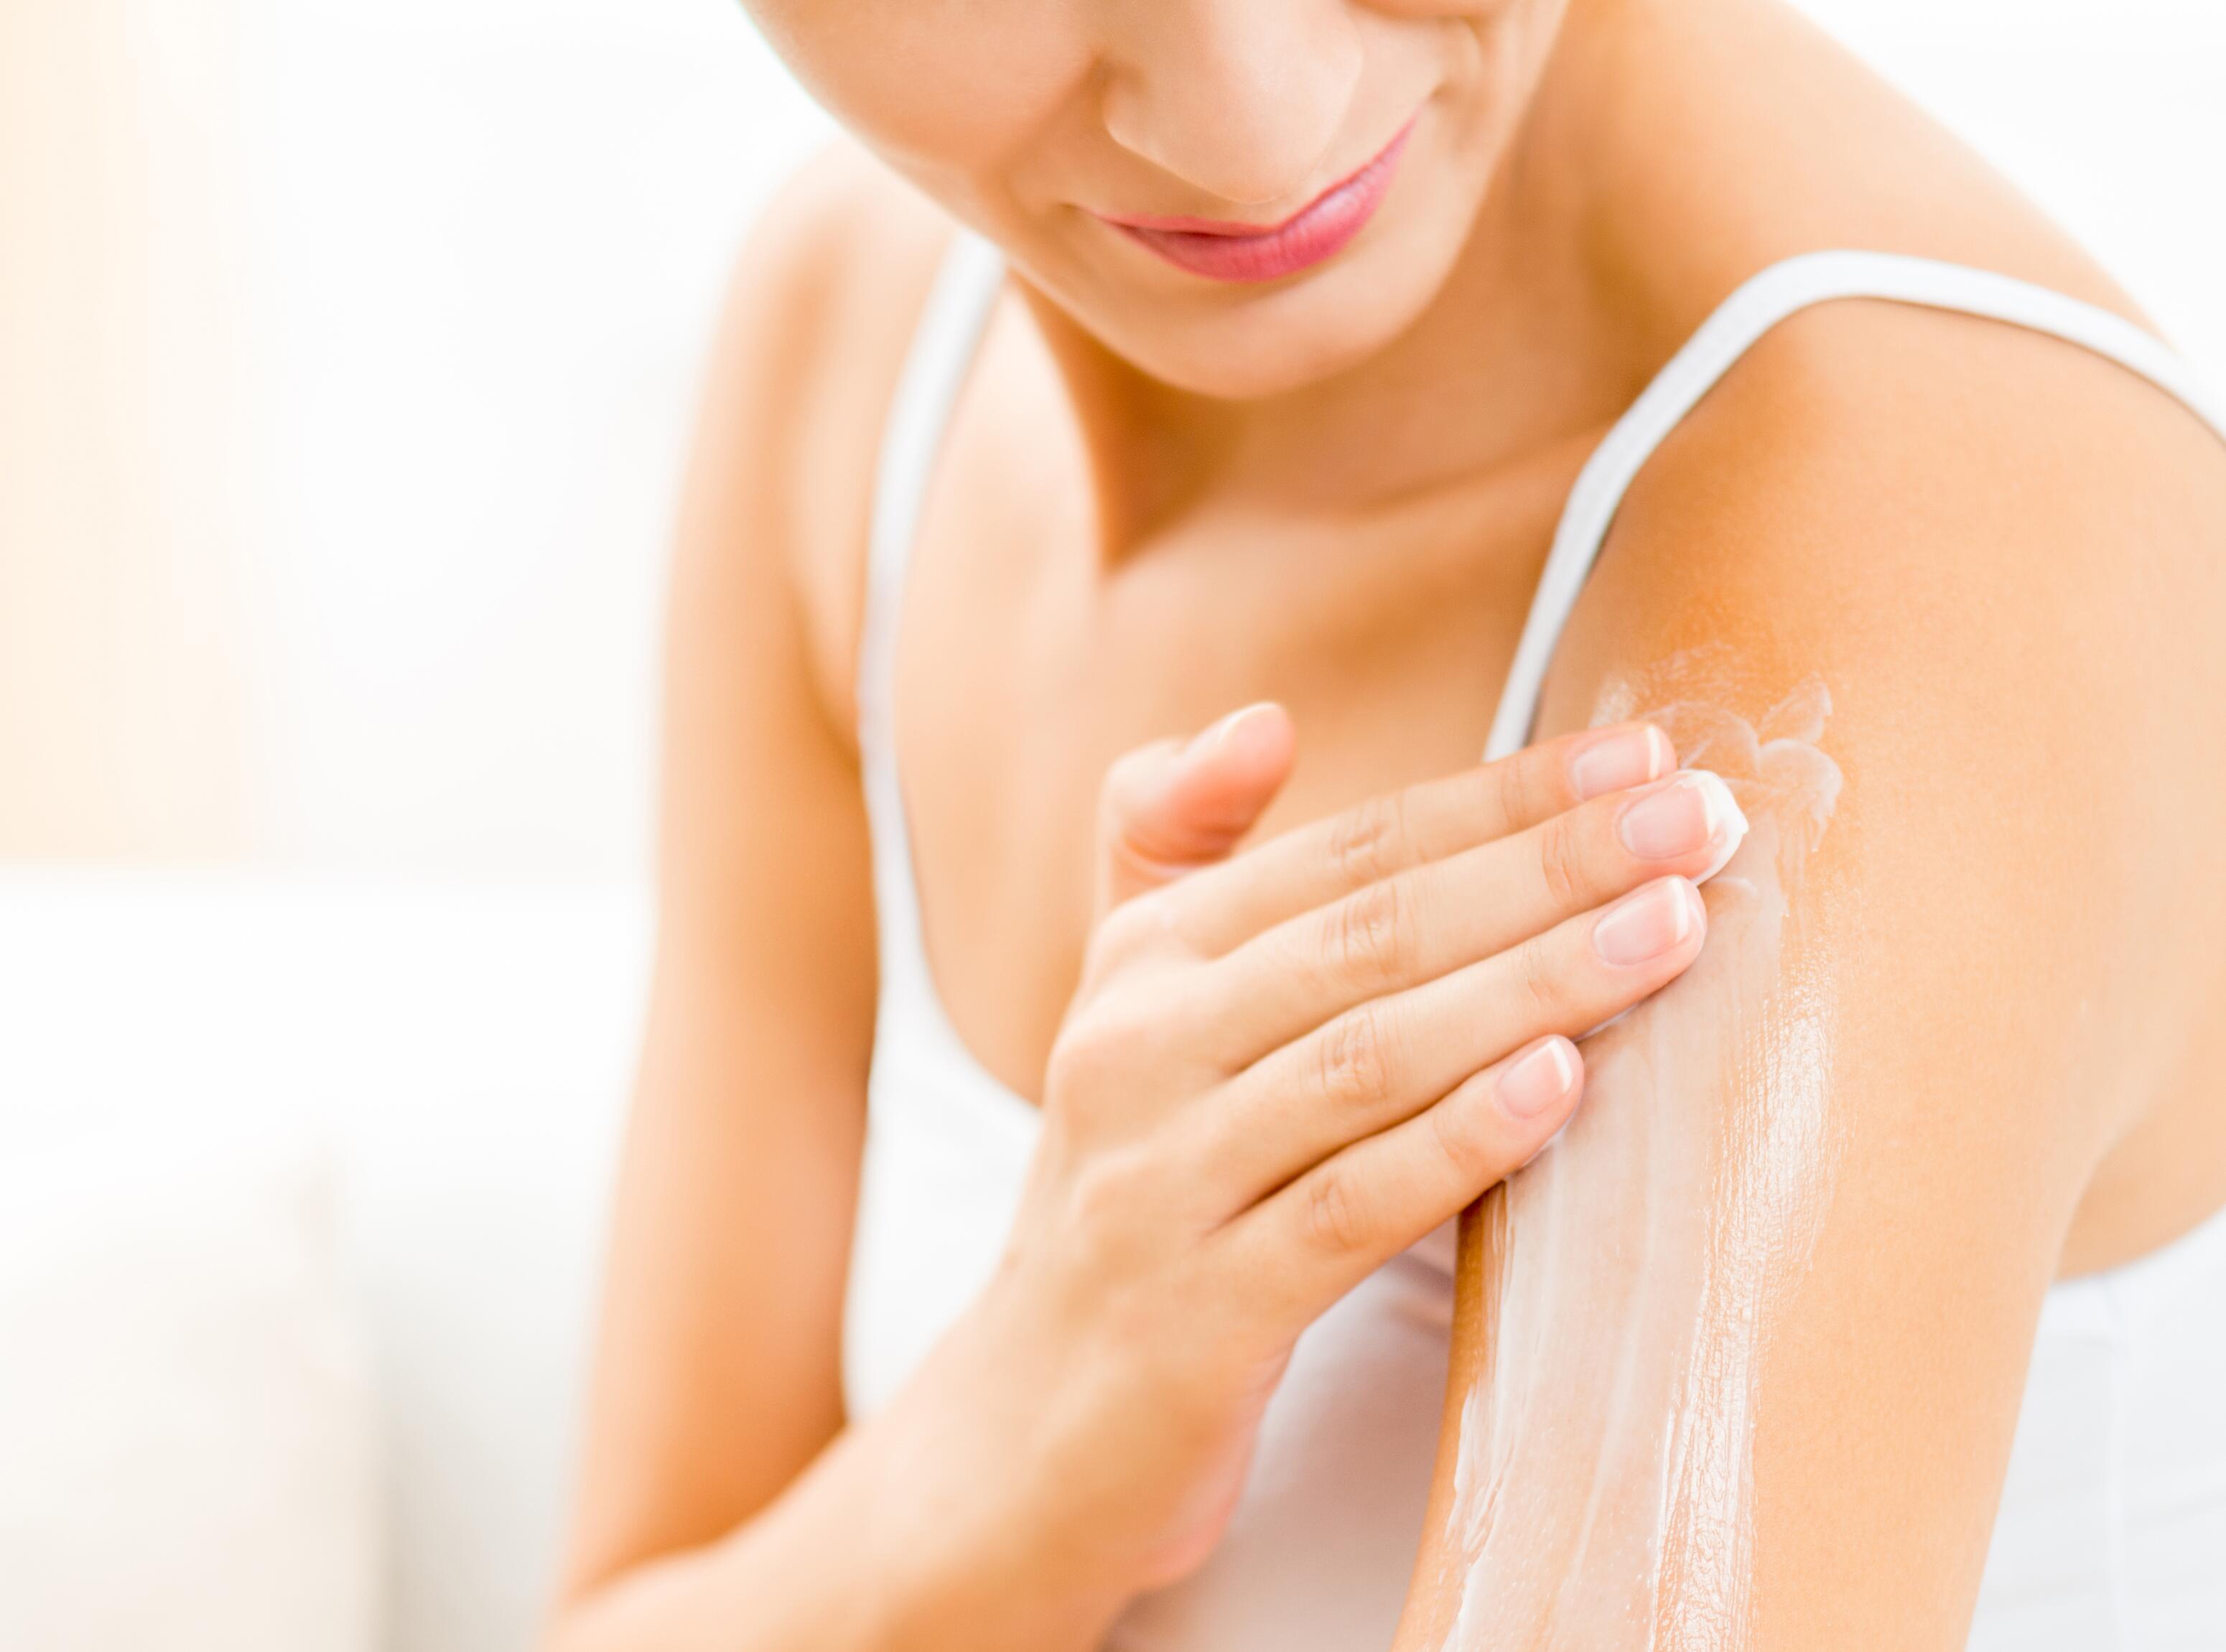 Skin and eczema